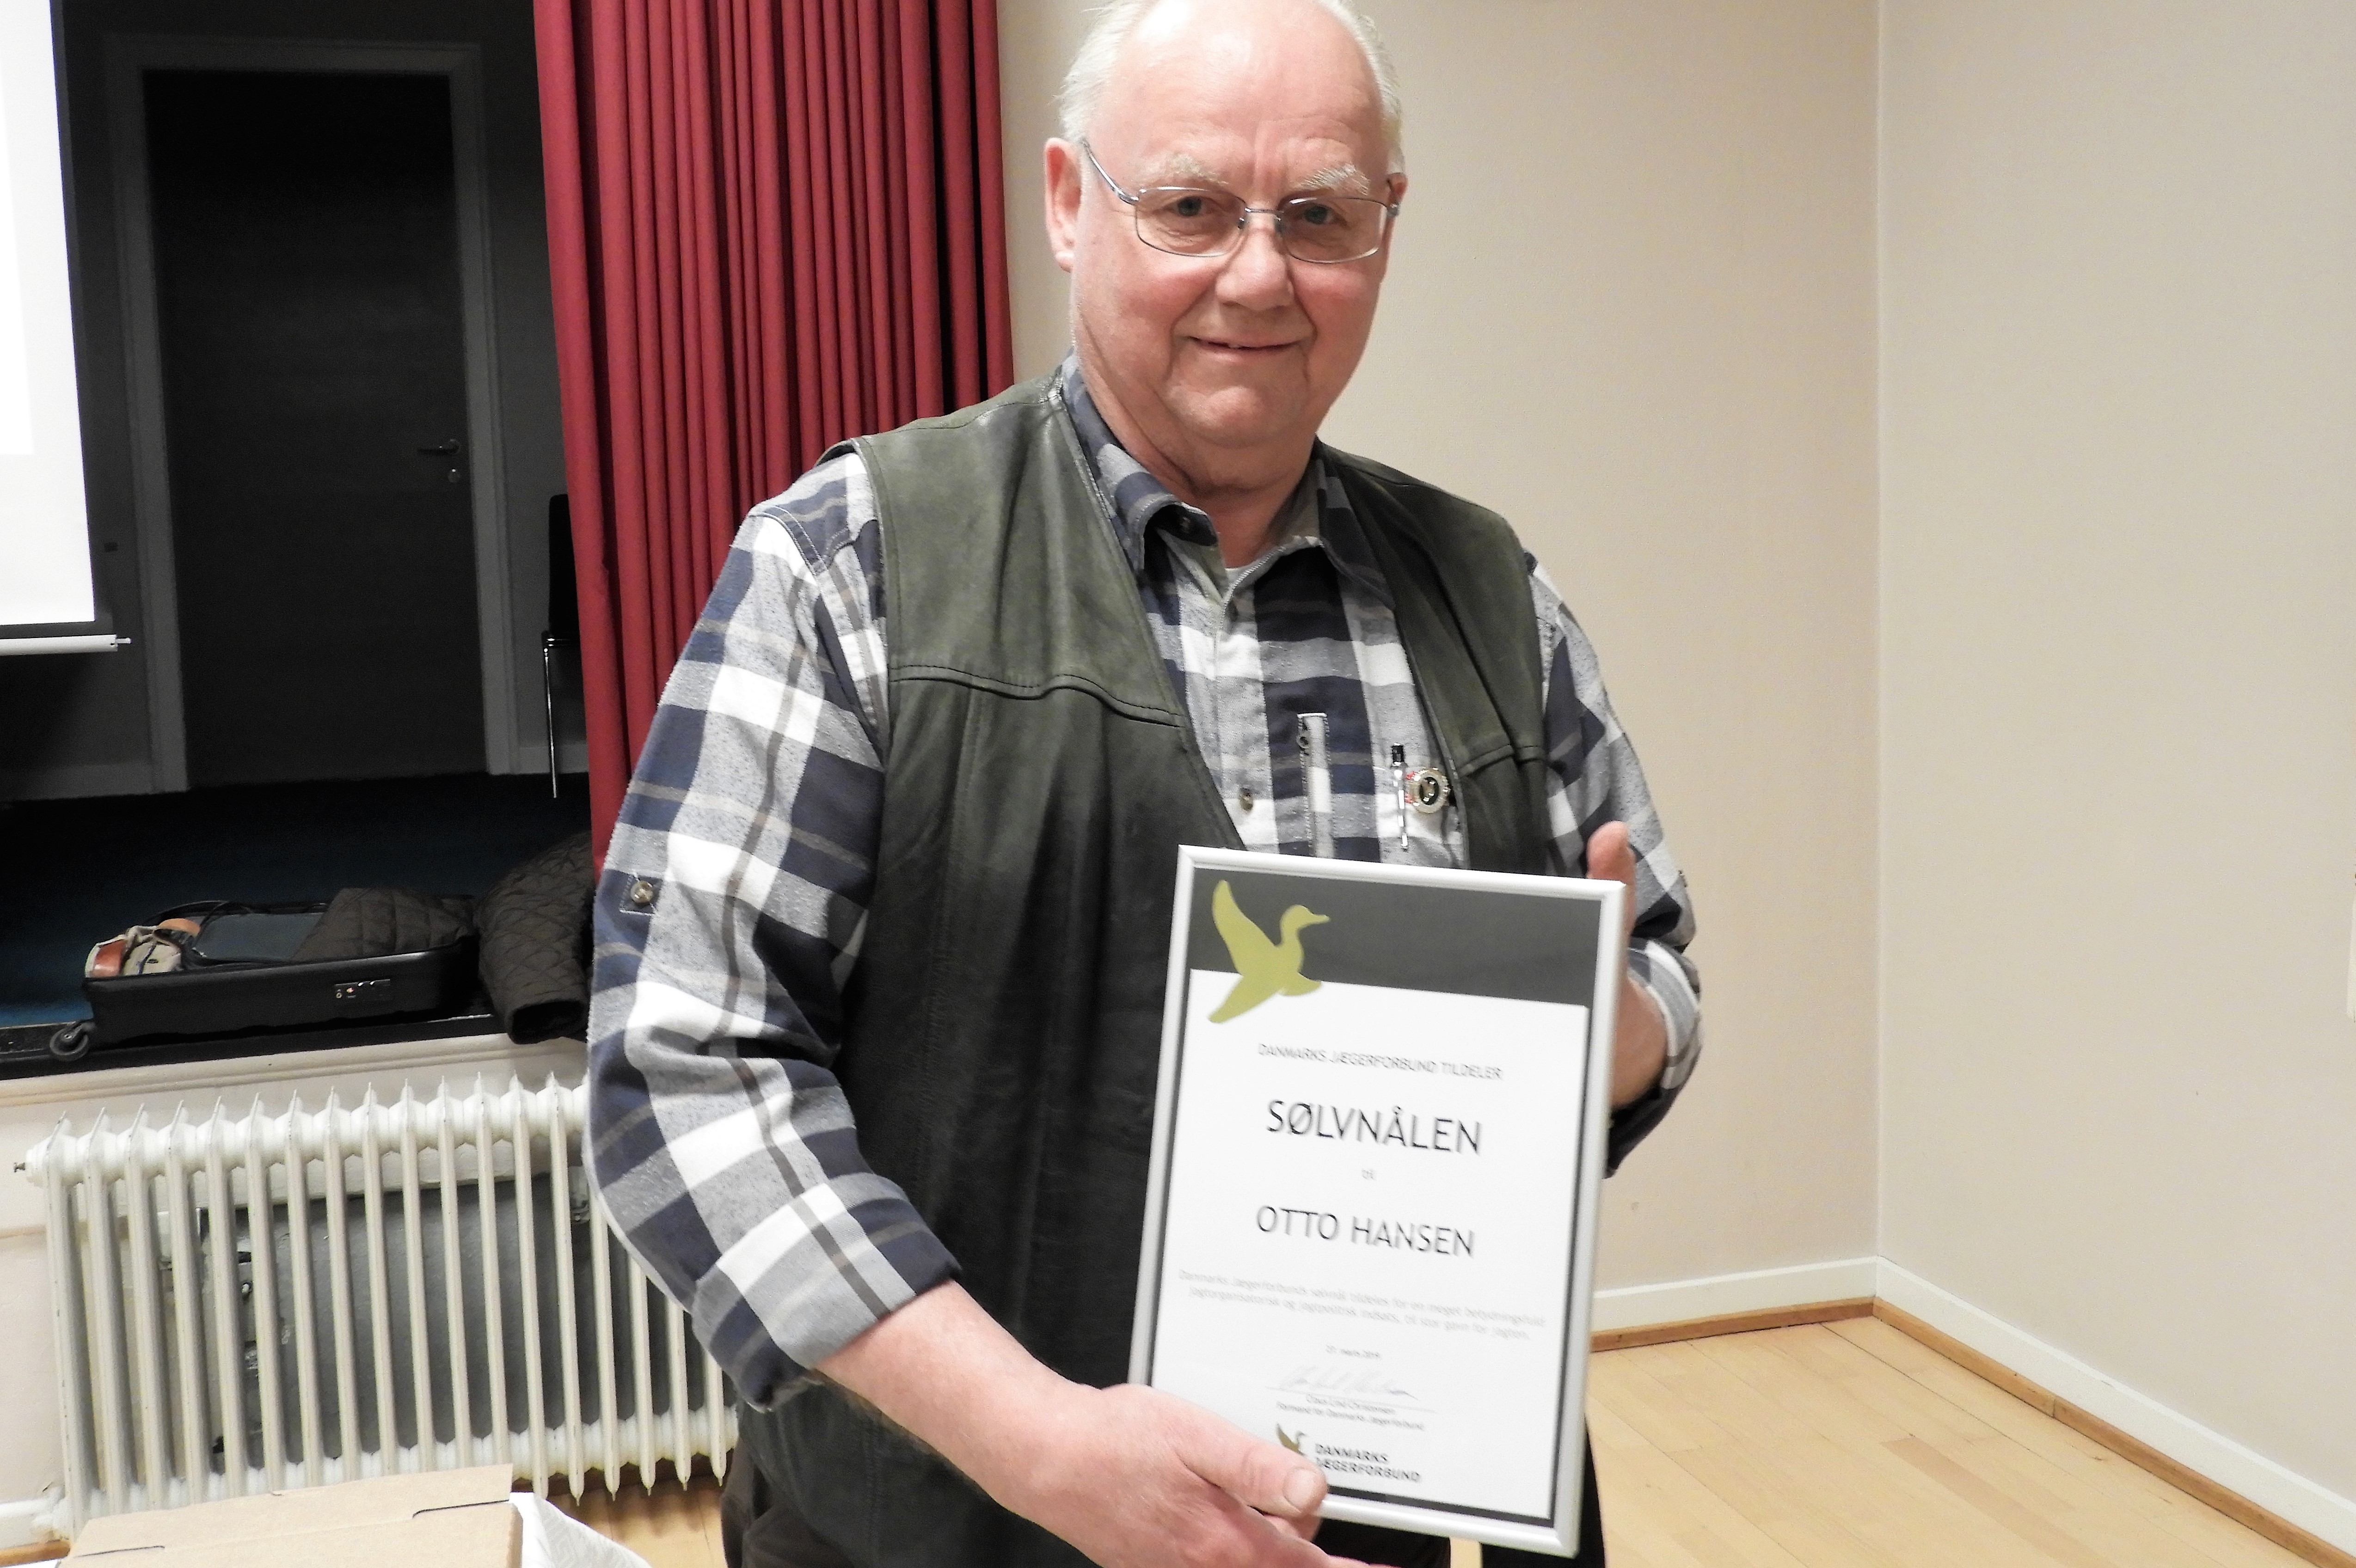 Den afgående riffelkoordinator Otto Hansen, fik for sit lange virke tildelt Jægerforbundets sølvnål under kredsmødet.